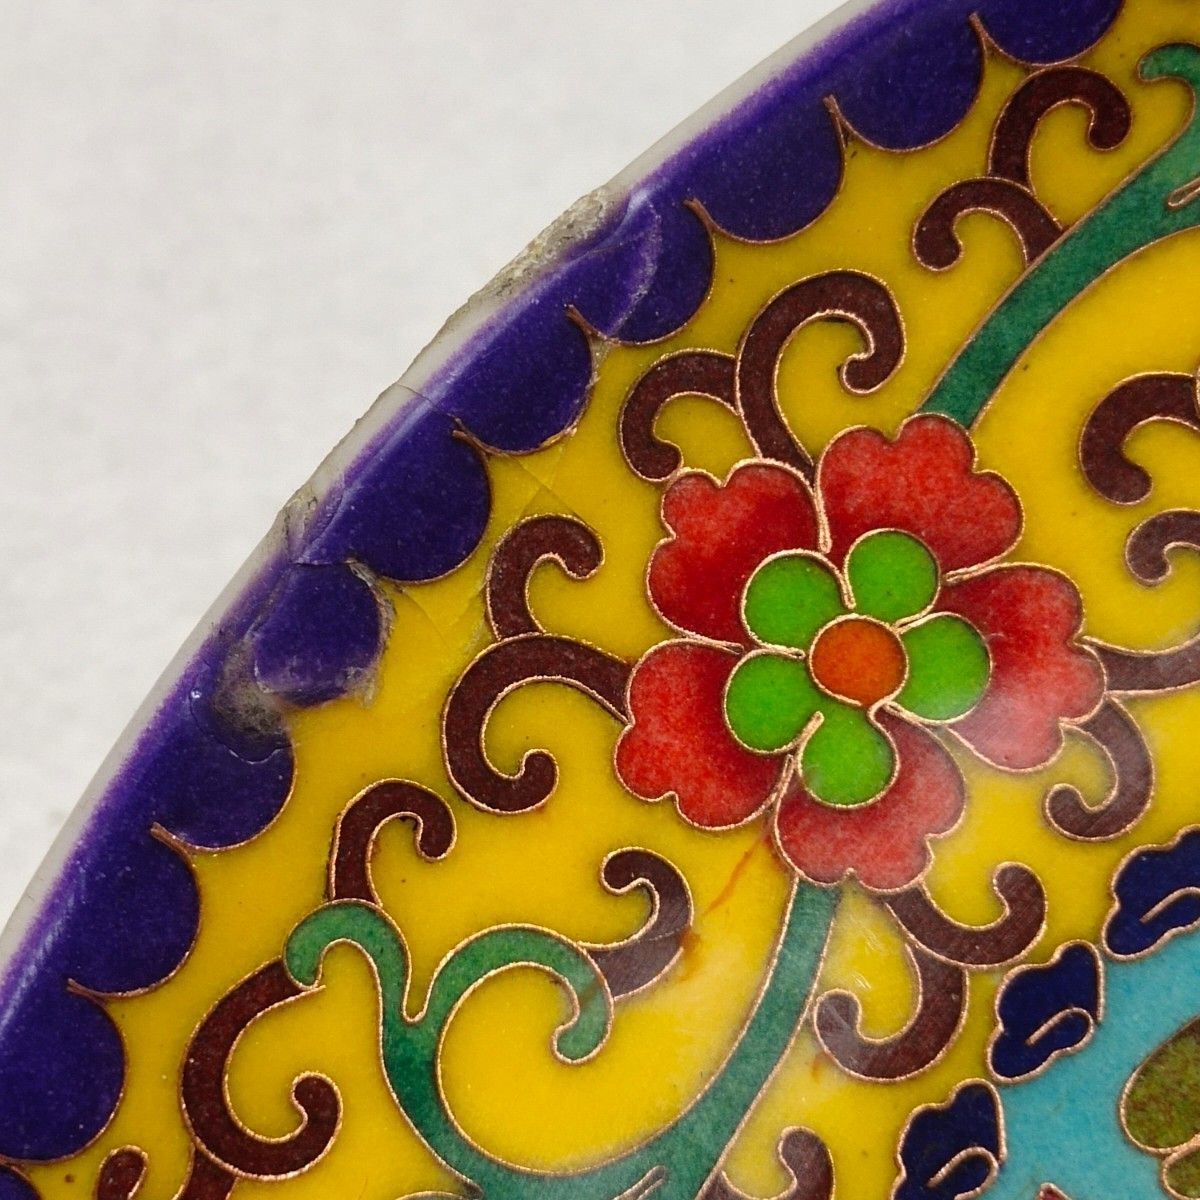 時代物 中国古磁 紫銅線埋込 景泰藍 七宝 鴛鴦戯水紋 観賞皿 補修あり 在銘